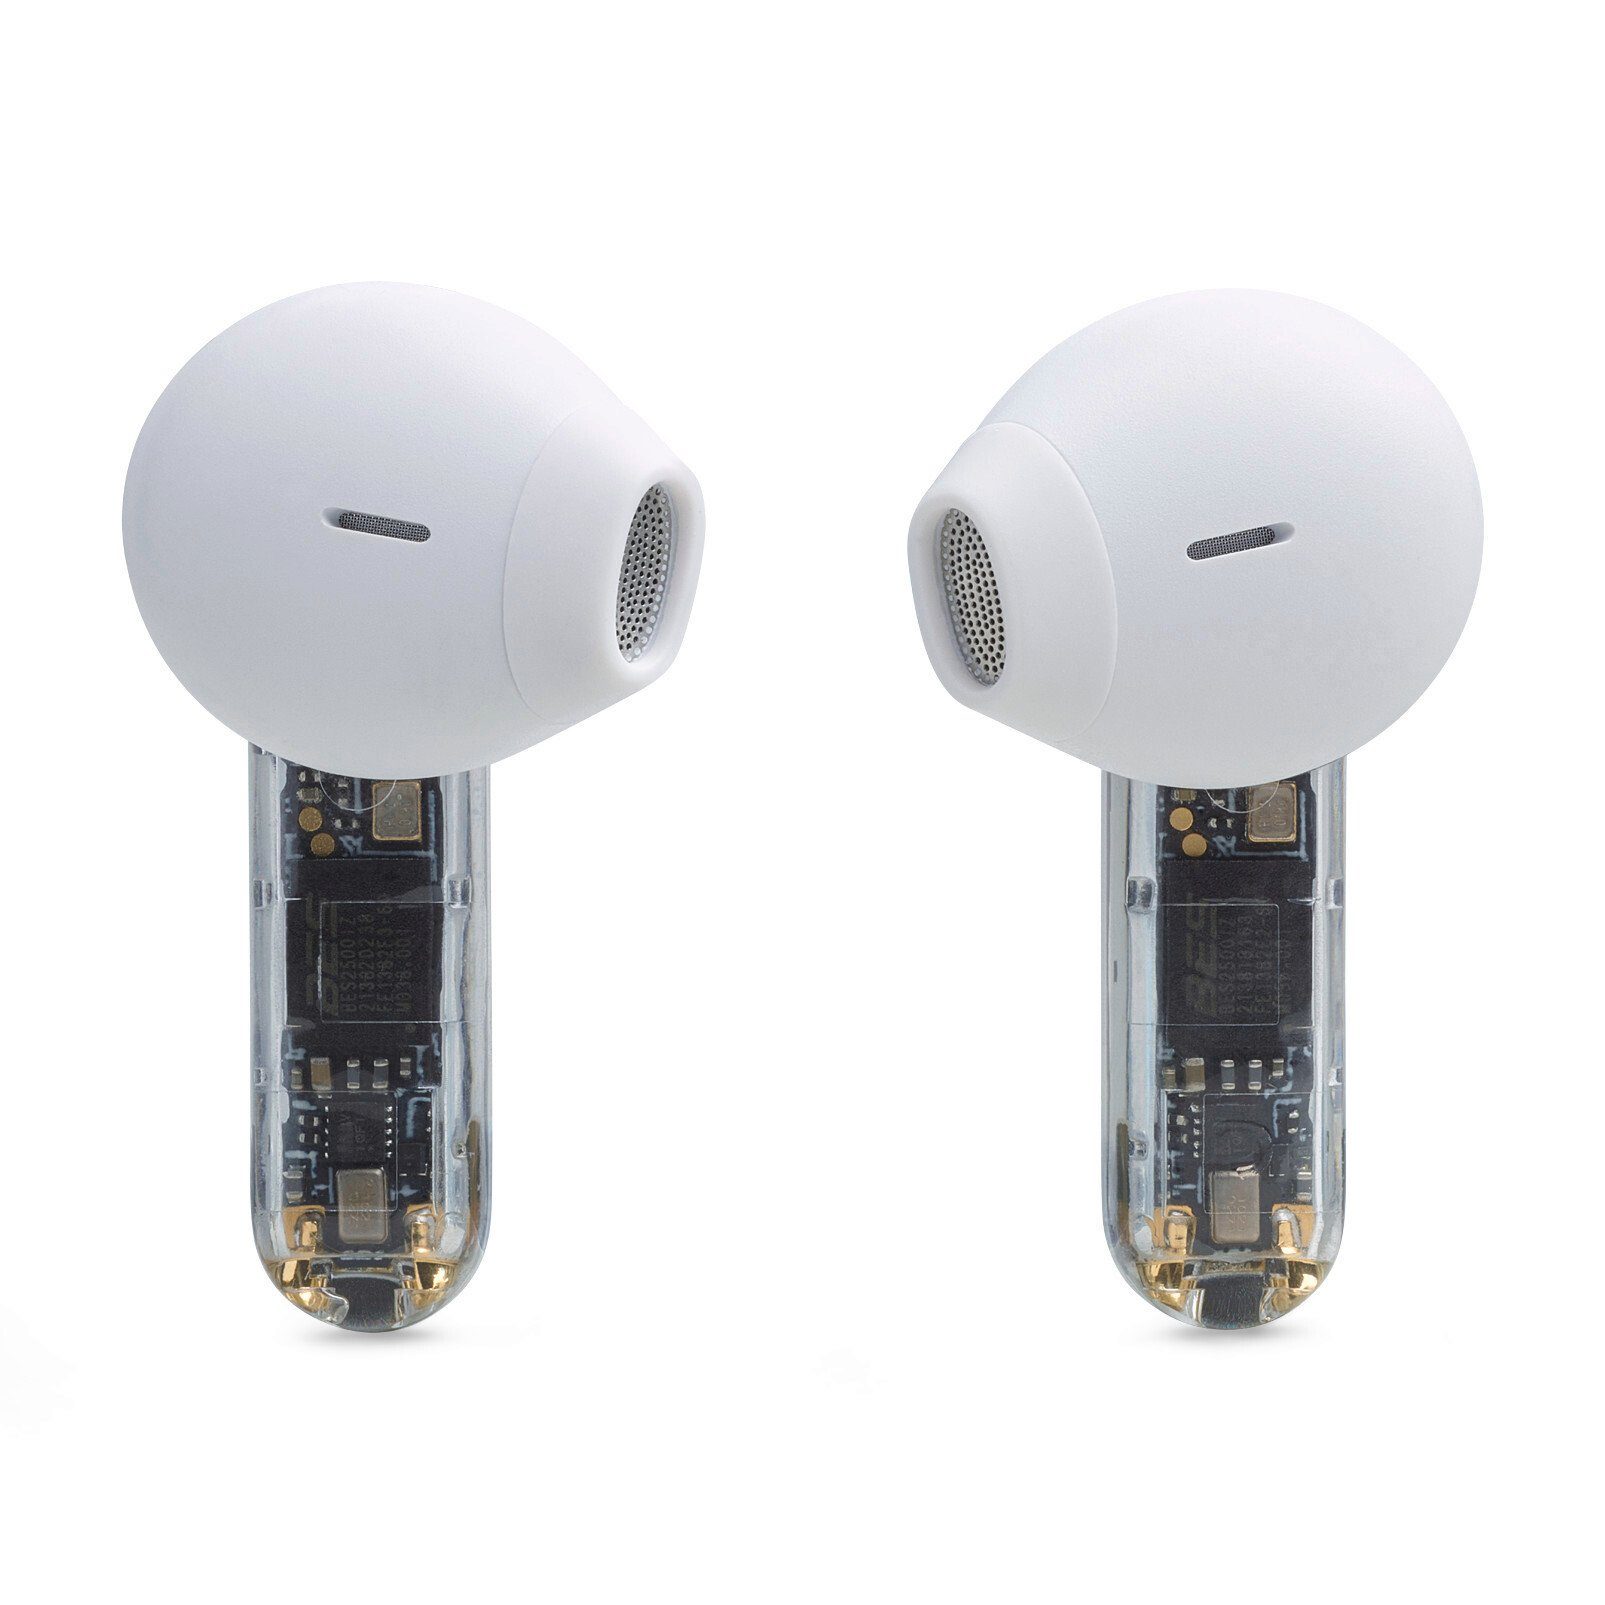 In-Ear-Kopfhörer JBL Sonderedition Tune Flex wireless Ghost- weiß/transparent